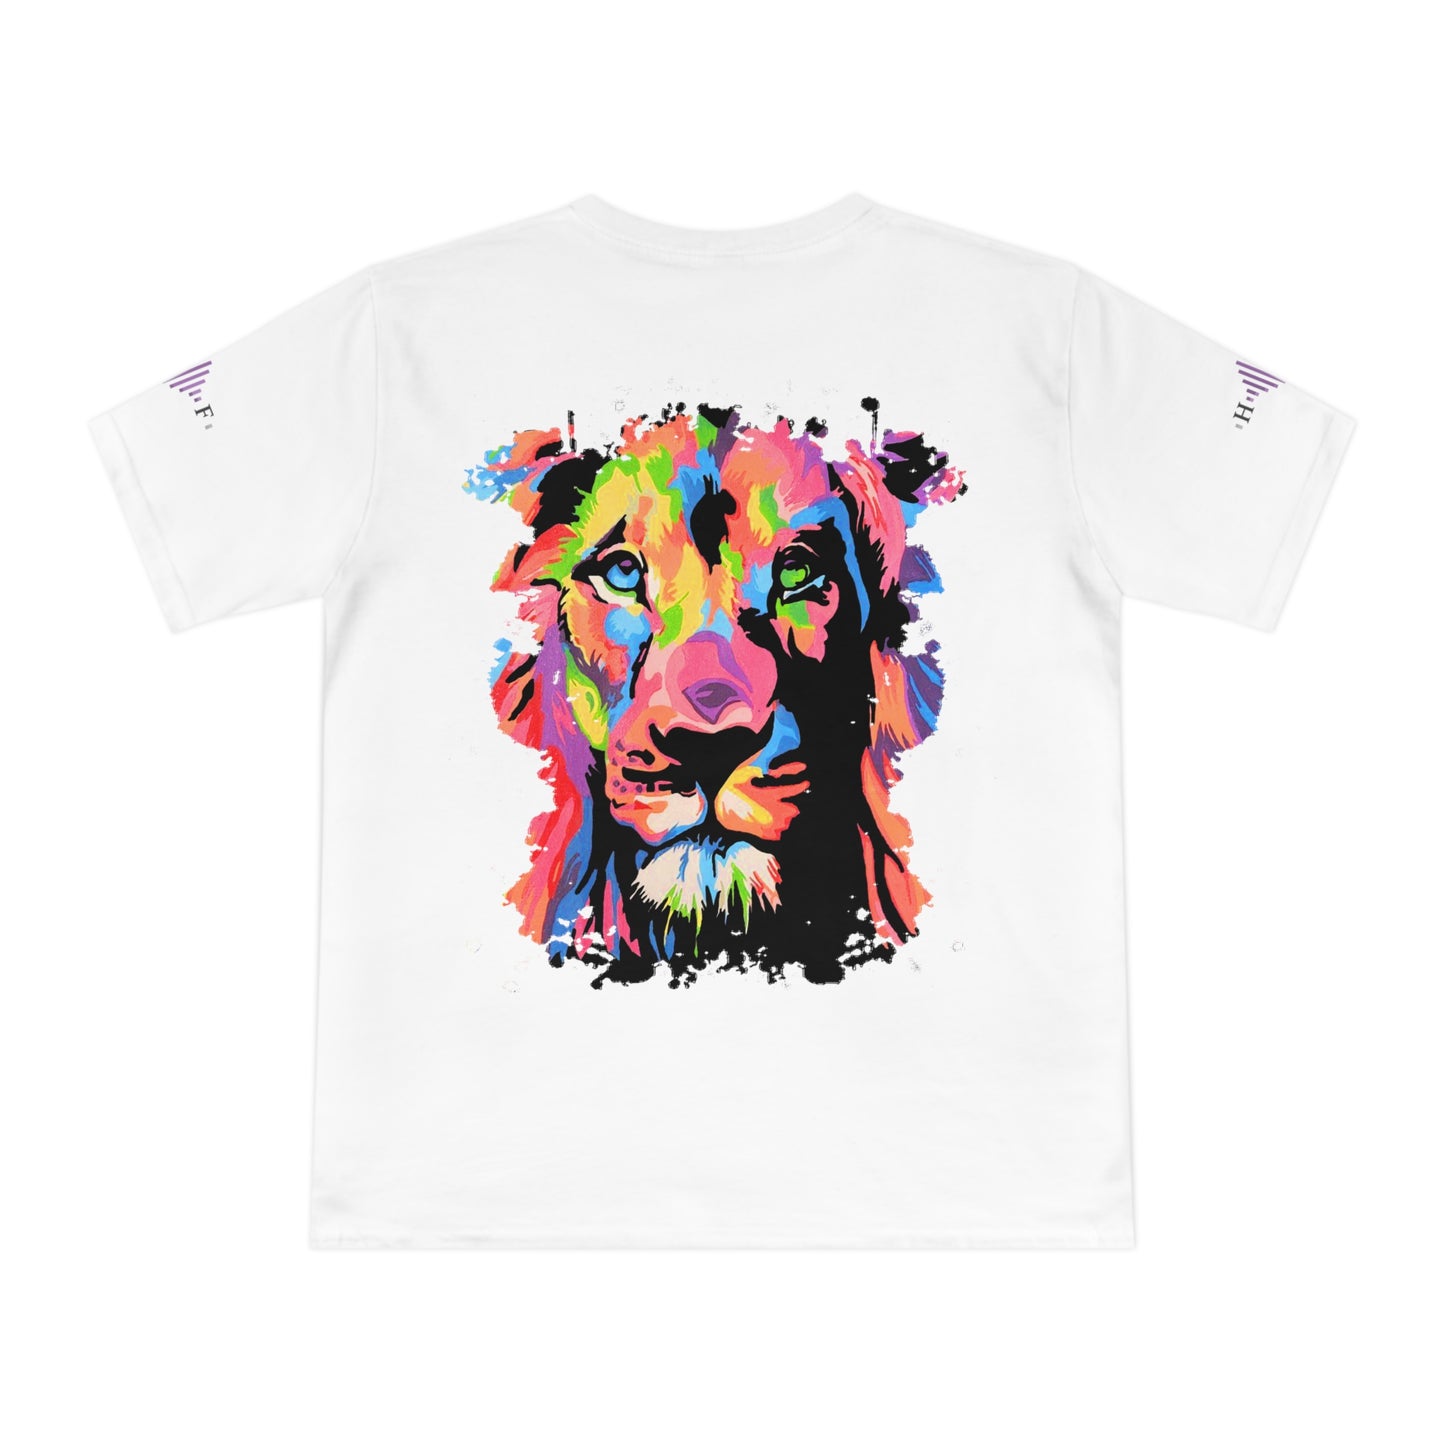 Cœur de Lion BIOLOGIQUE - T-shirt unisexe en jersey classique